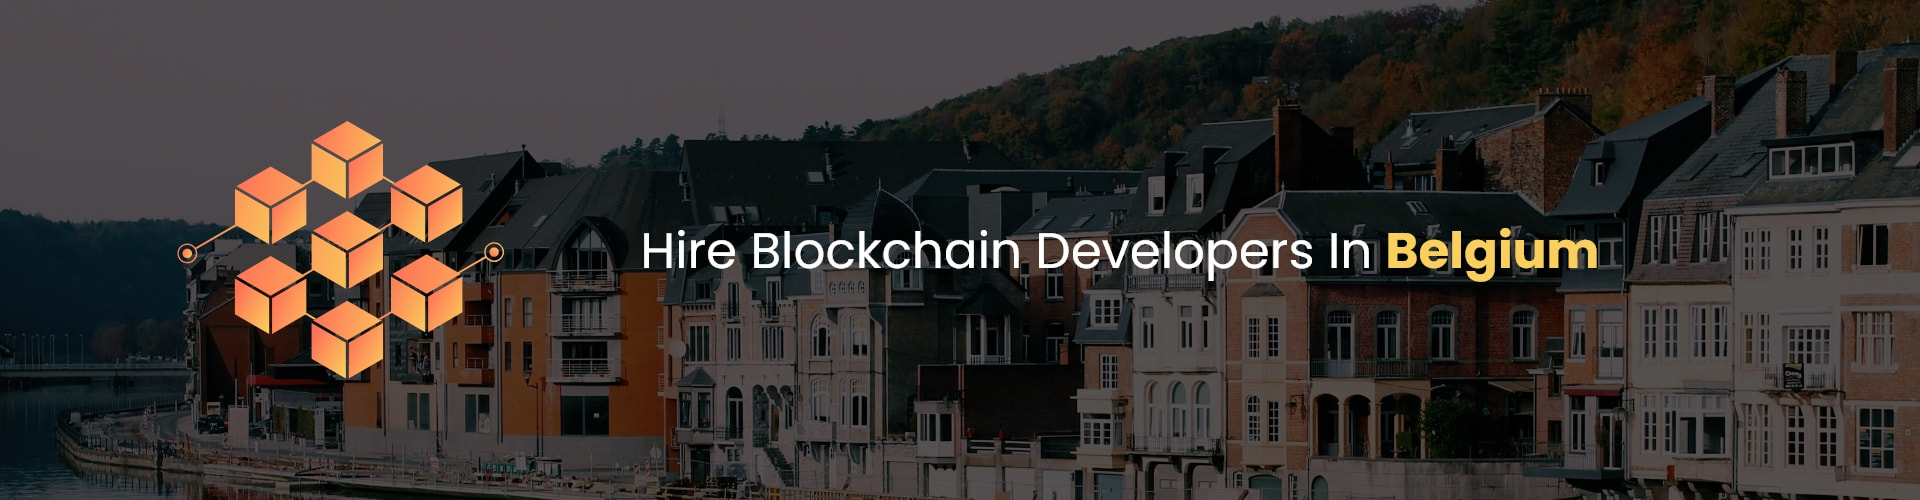 hire blockchain developers in belgium